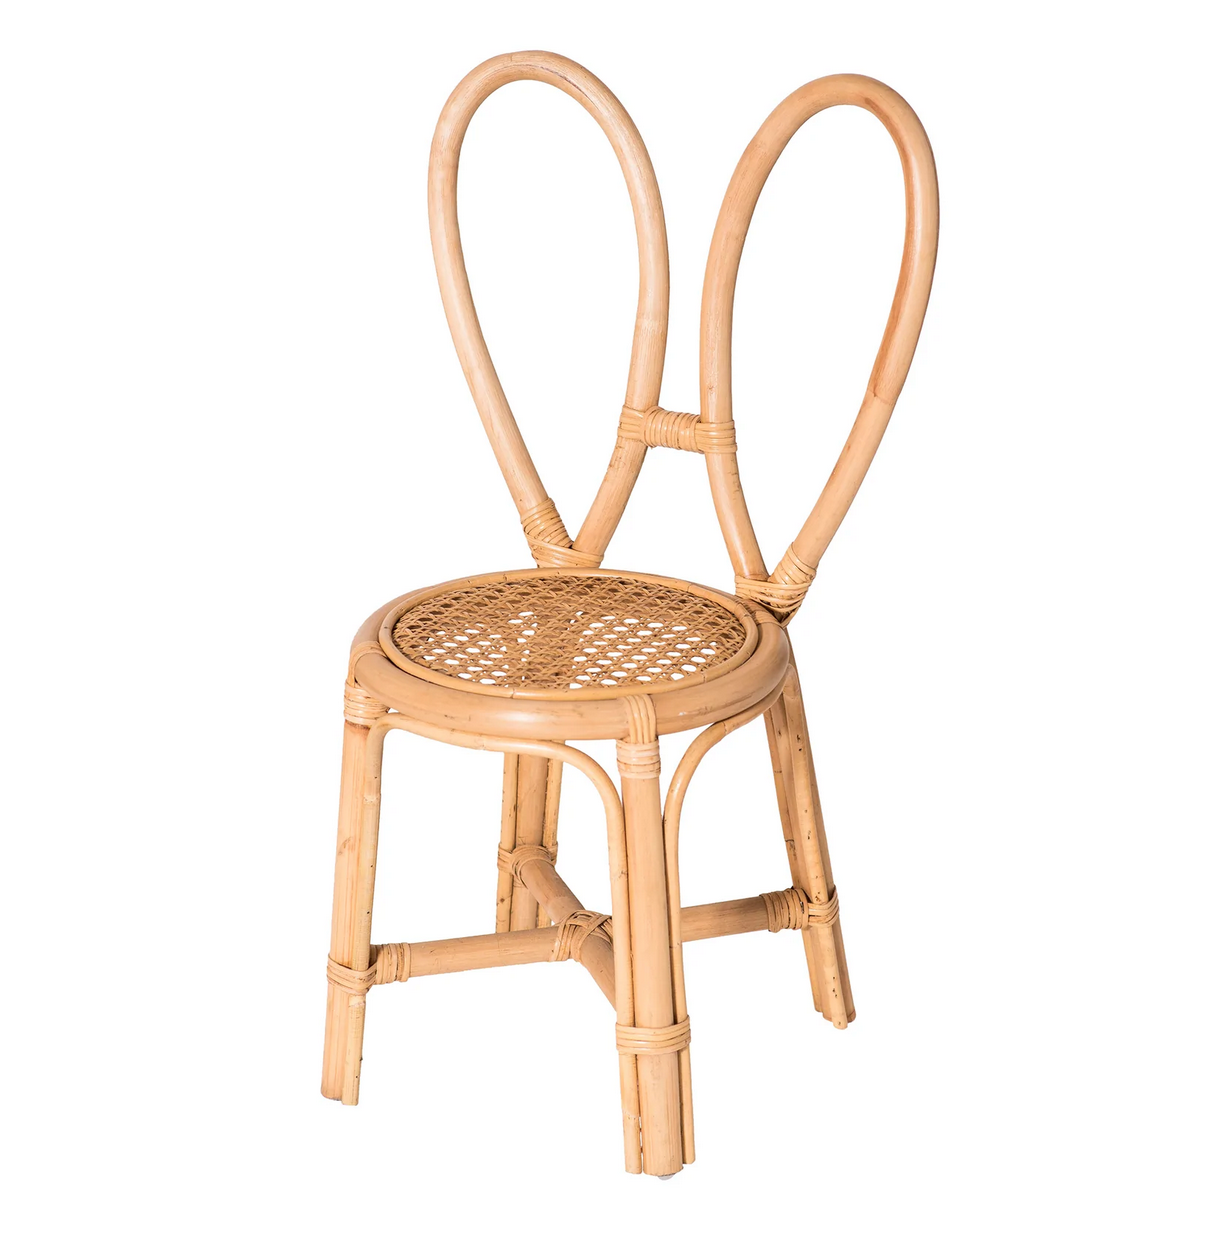 Poppie Bunny Chair - Kid Size